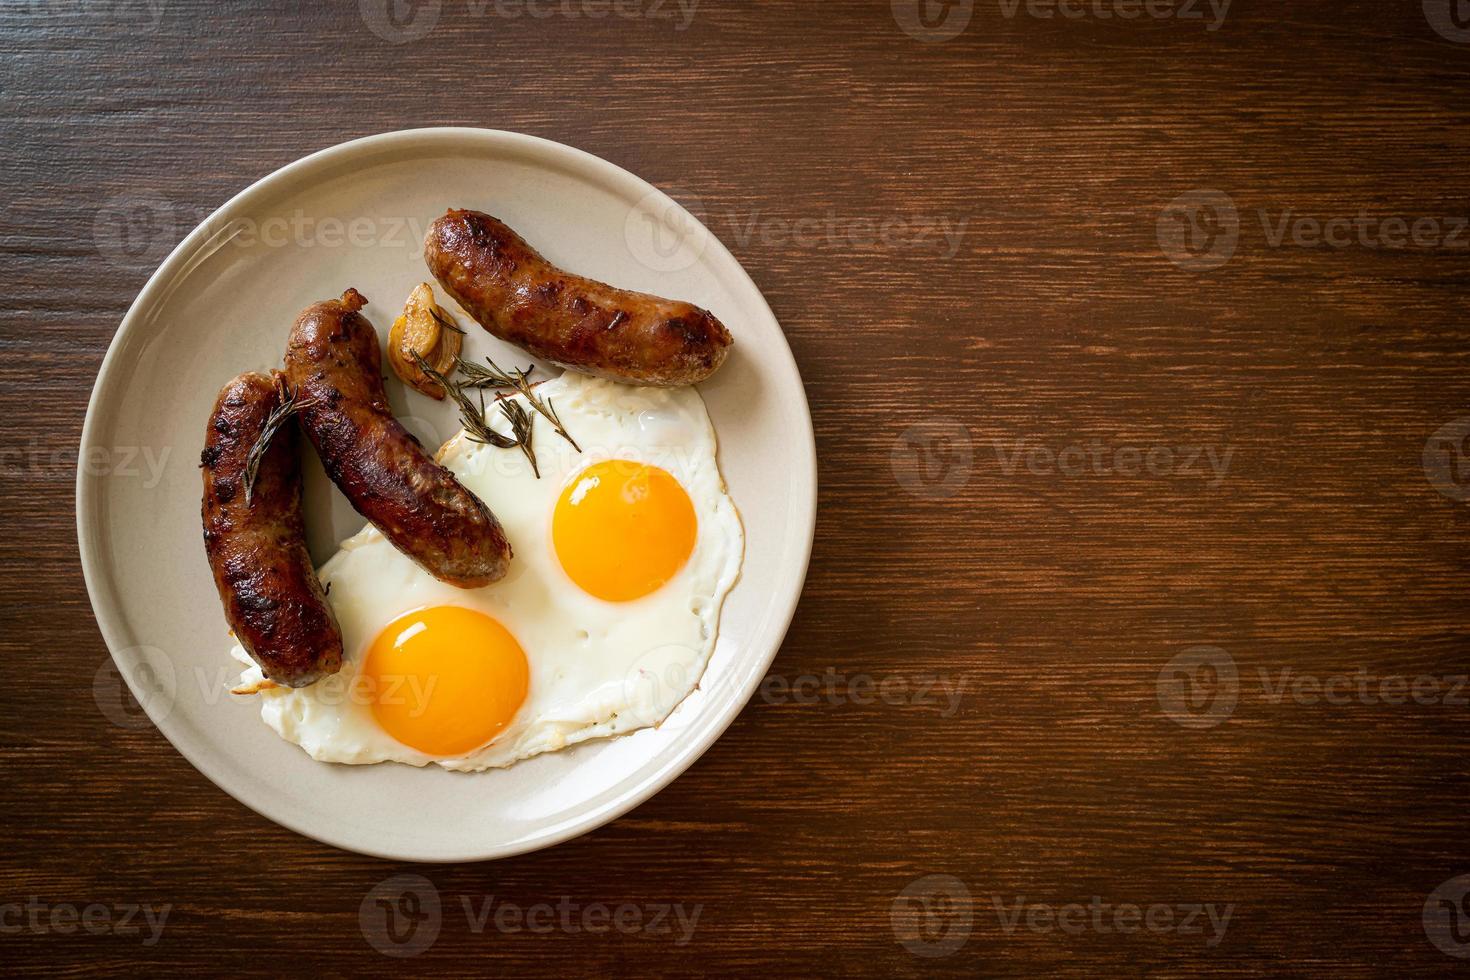 oeuf au plat double fait maison avec saucisse de porc frit - pour le petit déjeuner photo